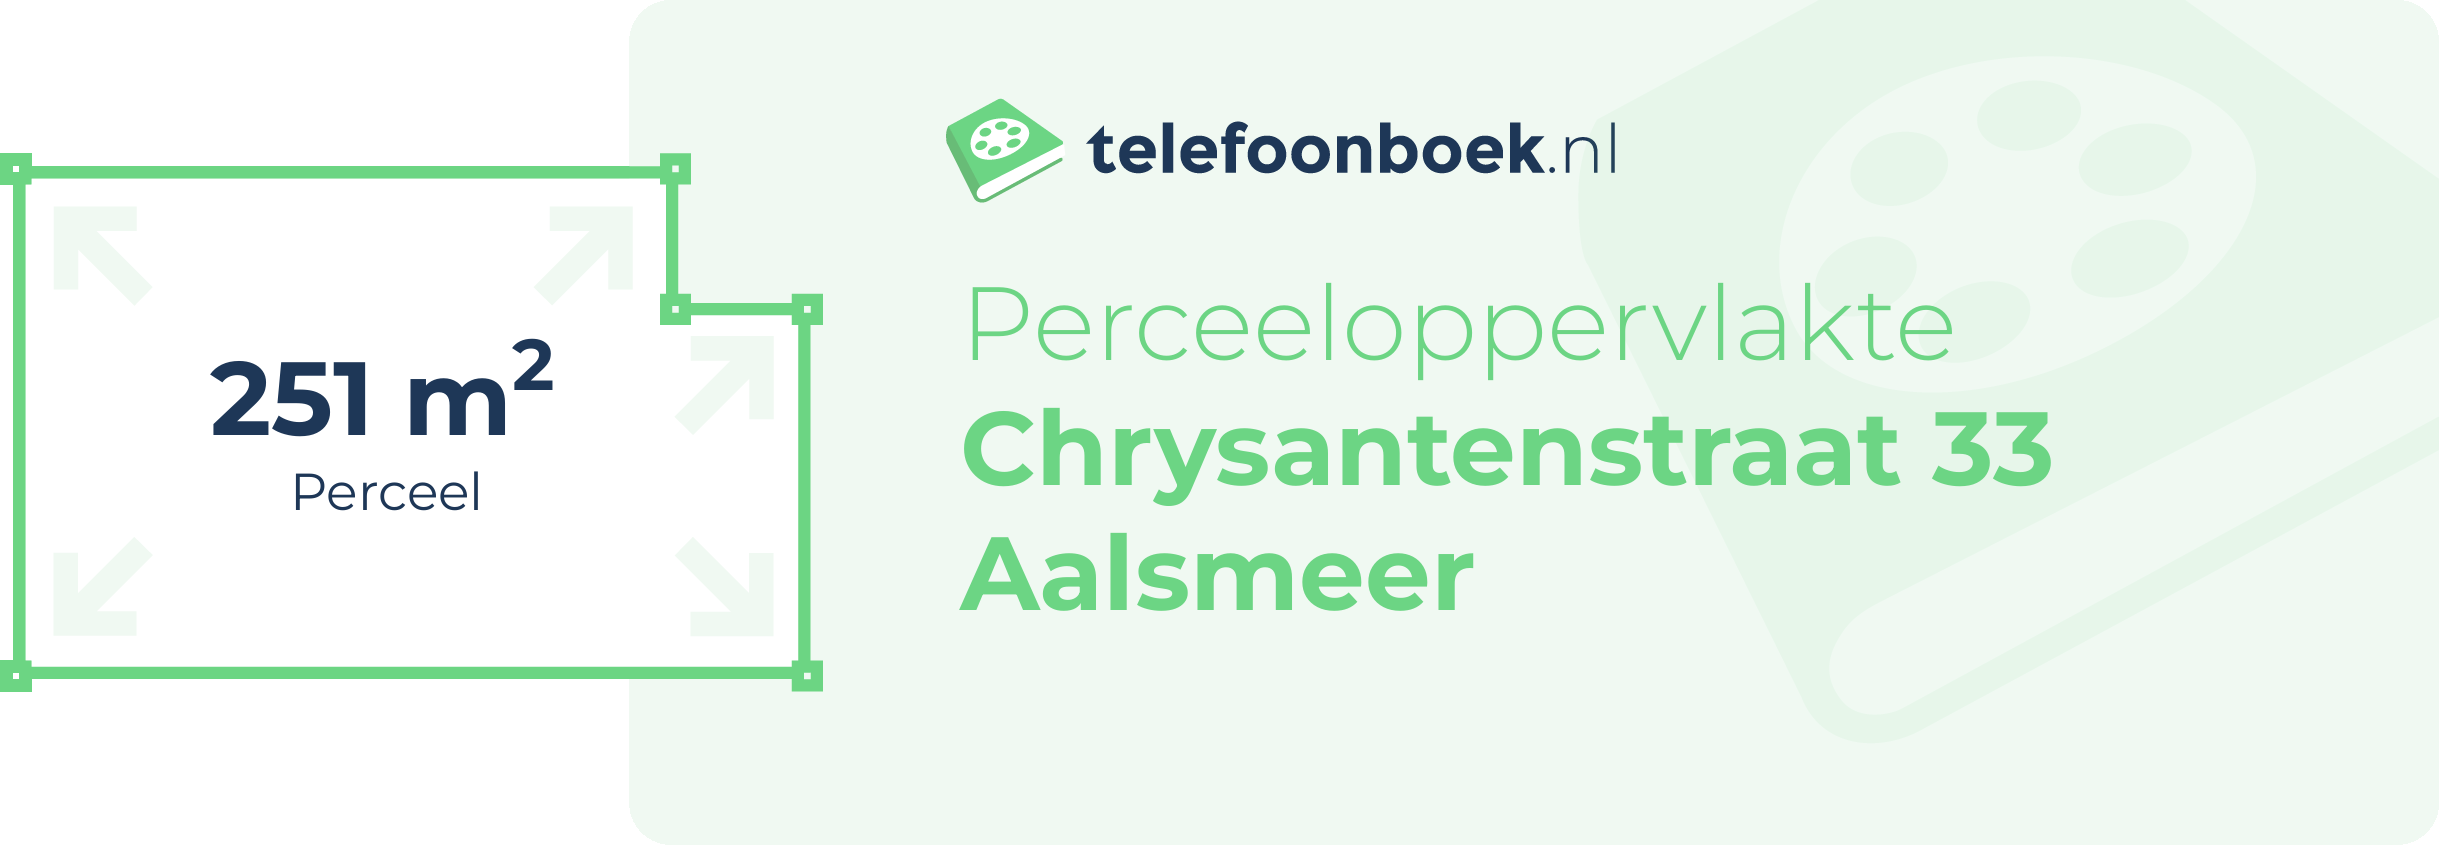 Perceeloppervlakte Chrysantenstraat 33 Aalsmeer